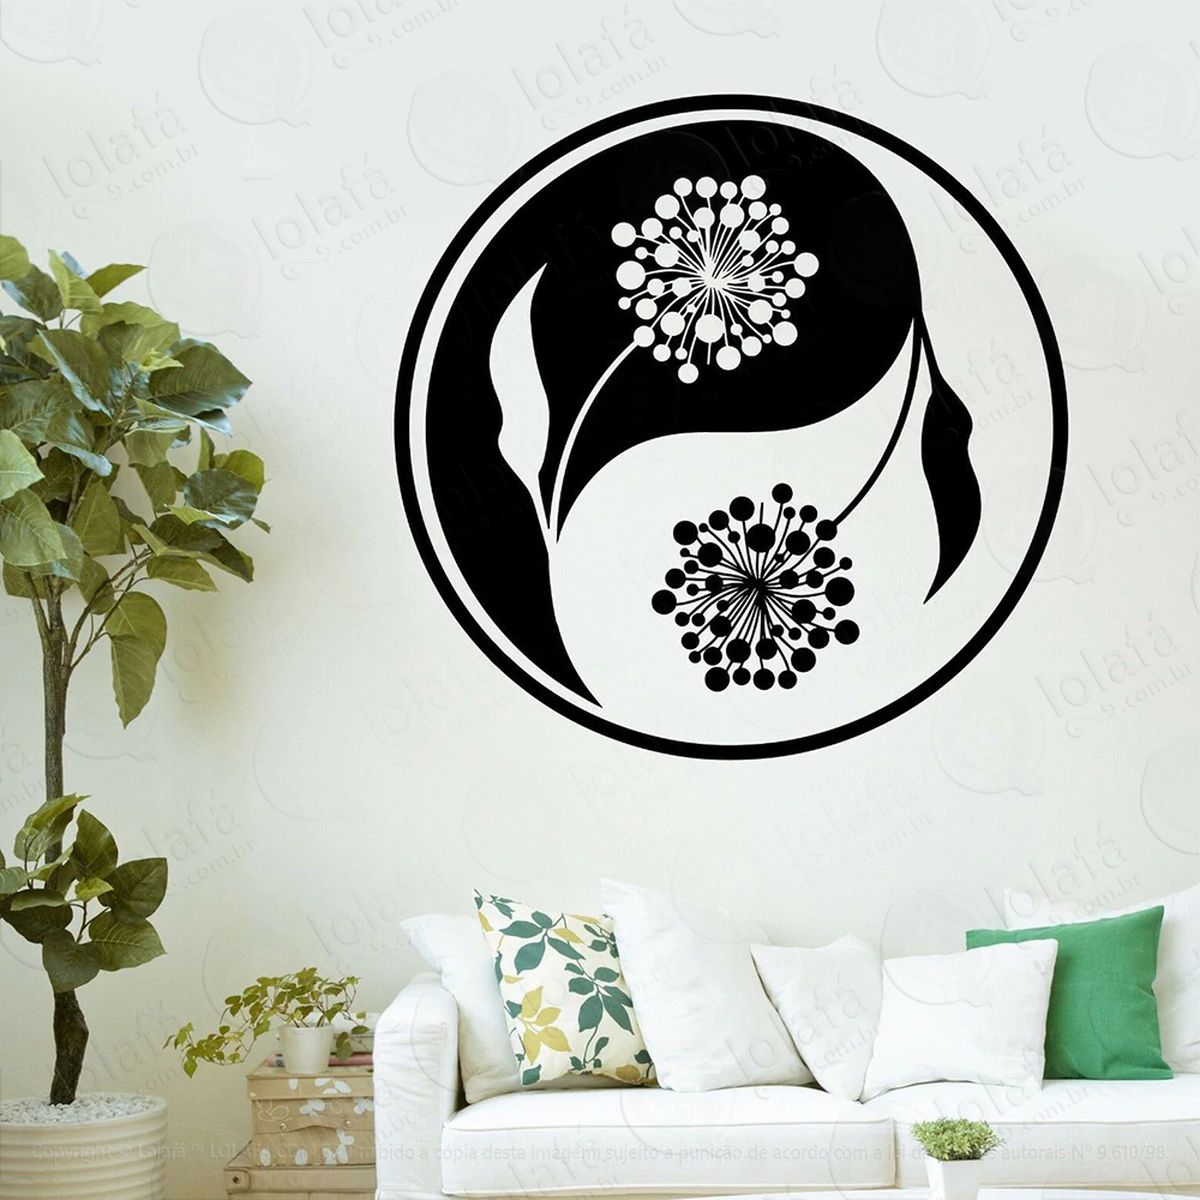 mandala yin yang para equilibrar as energias adesivo de parede decorativo para casa, quarto, sala e vidro - mod:416